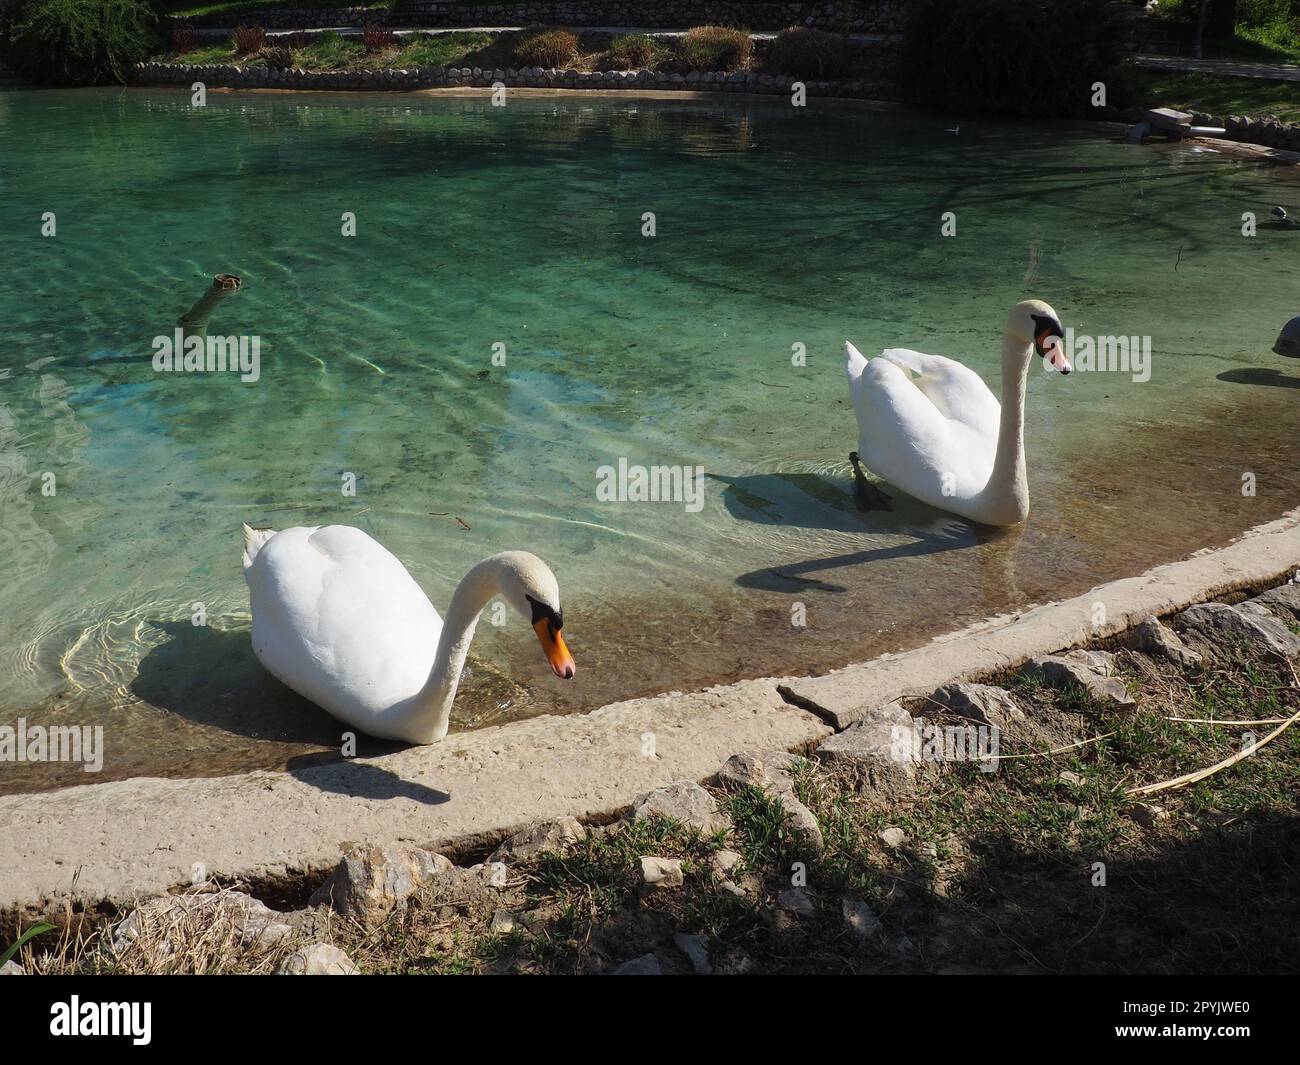 Zwei weiße Schwäne am Ufer des Reservoirs. Vögel am Wasser putzen ihre Federn. Stanisici, Bijelina, Bosnien und Herzegowina, ein Zoo in einem Ethno-Dorf. Die Fauna Europas. Stockfoto